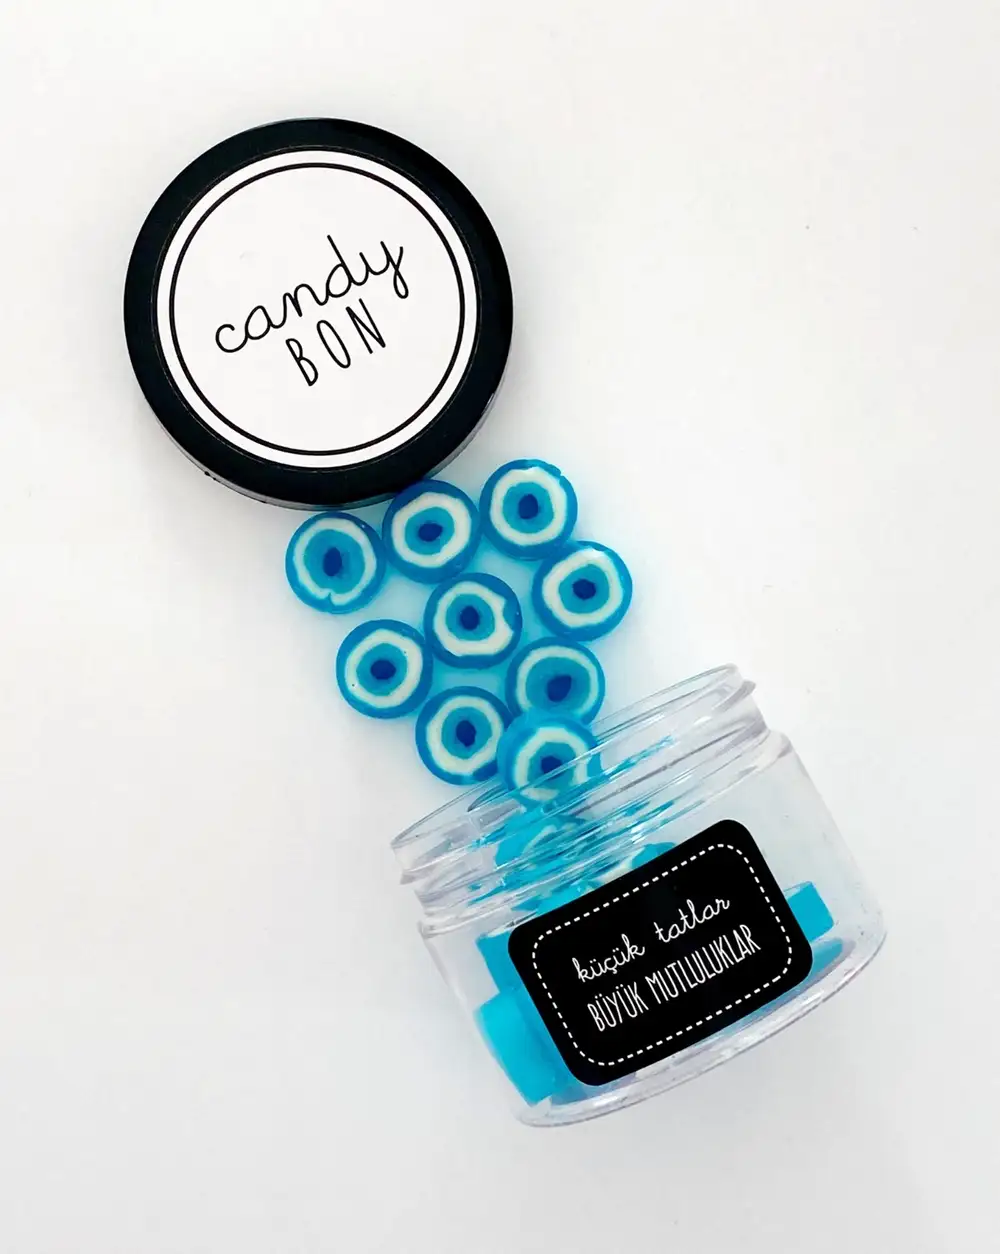 Candybon El Yapımı Nazar Boncuklu Desenli Mavi Akide Şekeri